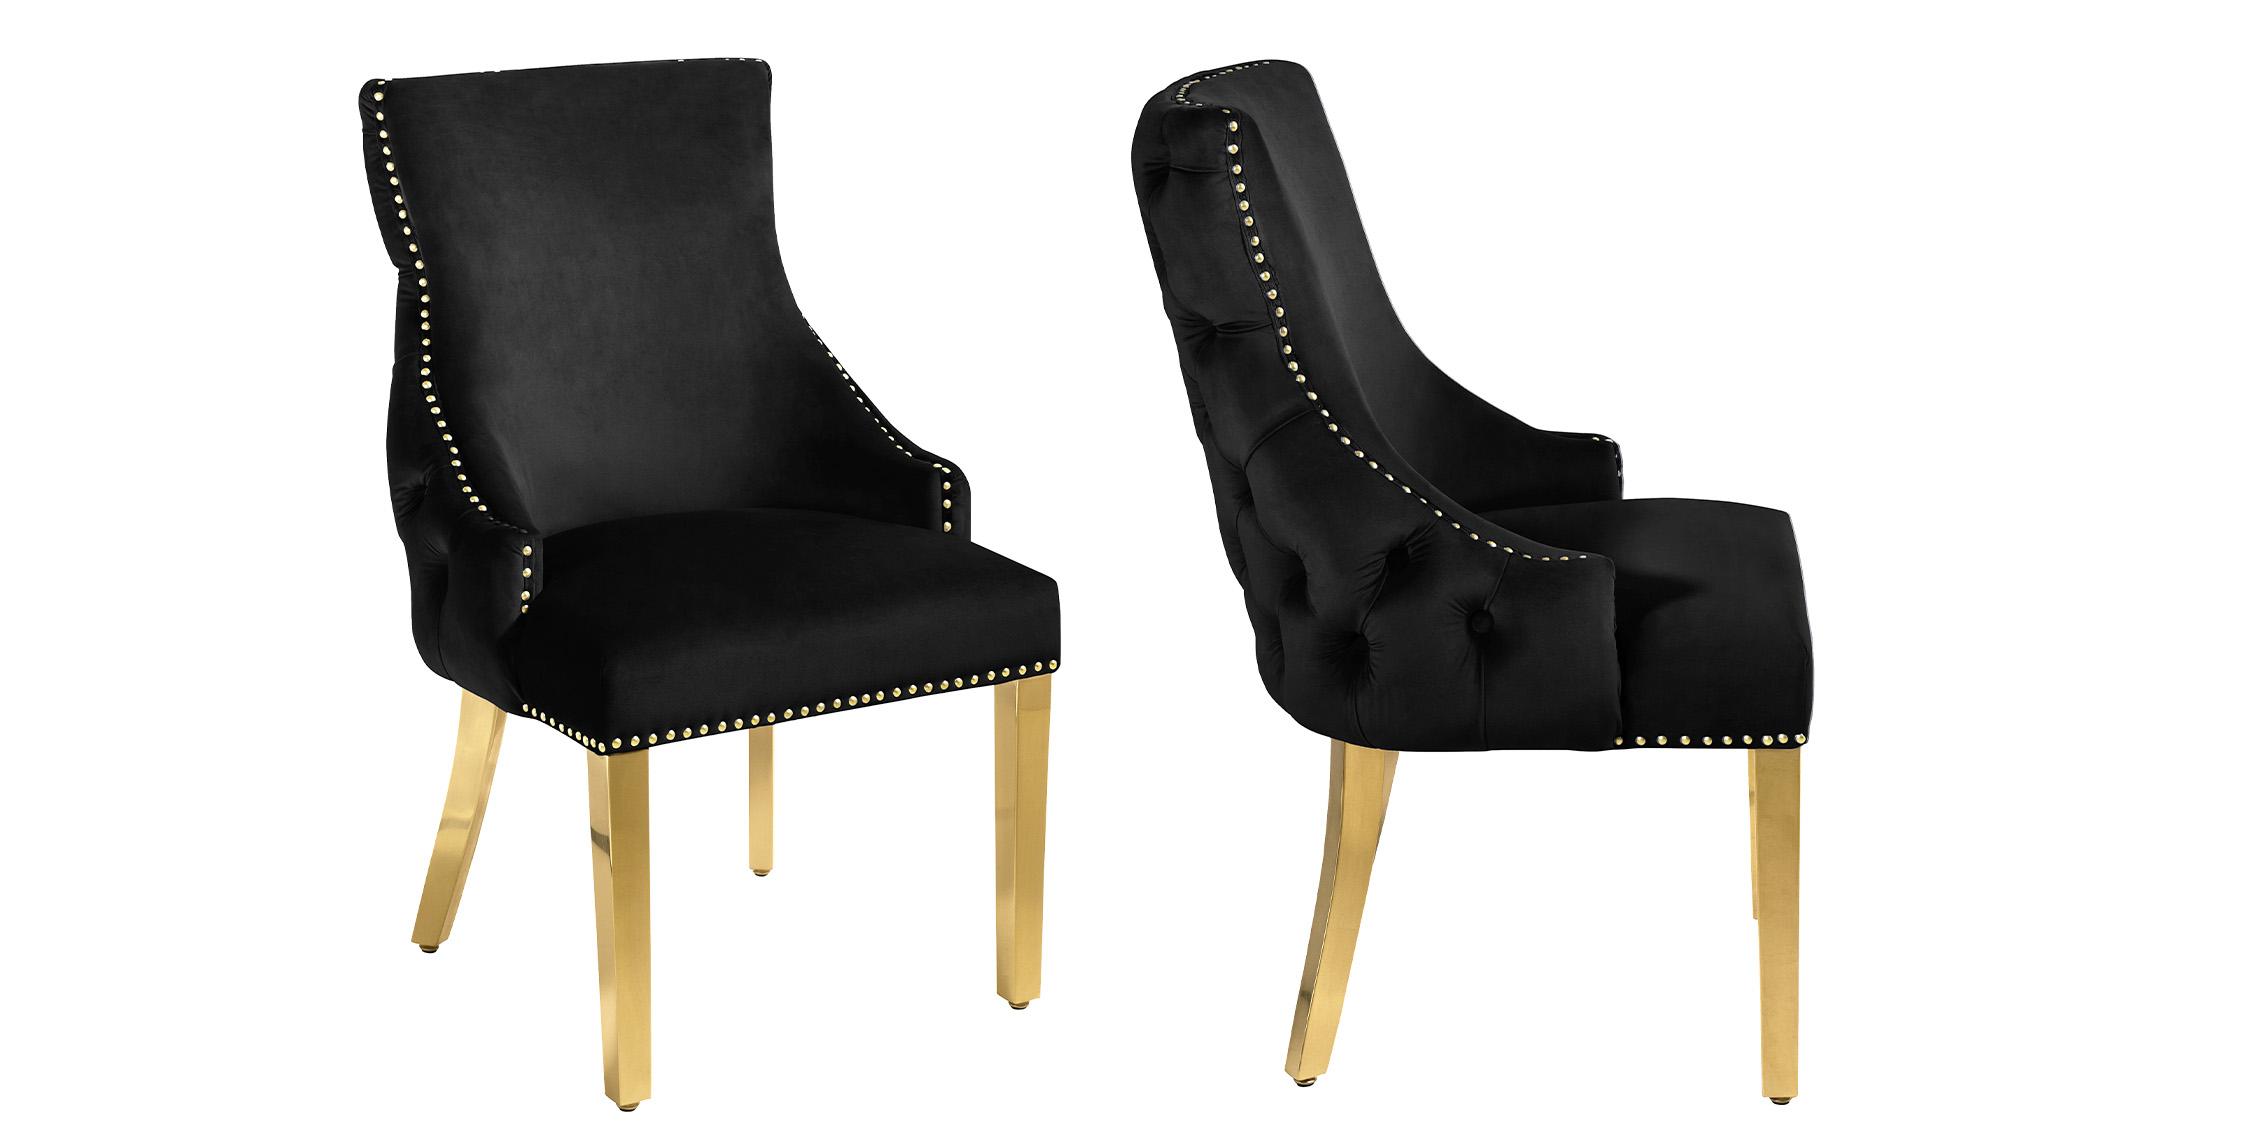 Contemporary, Modern Dining Chair Set TUFT 730Black-C 730Black-C in Gold, Black Velvet